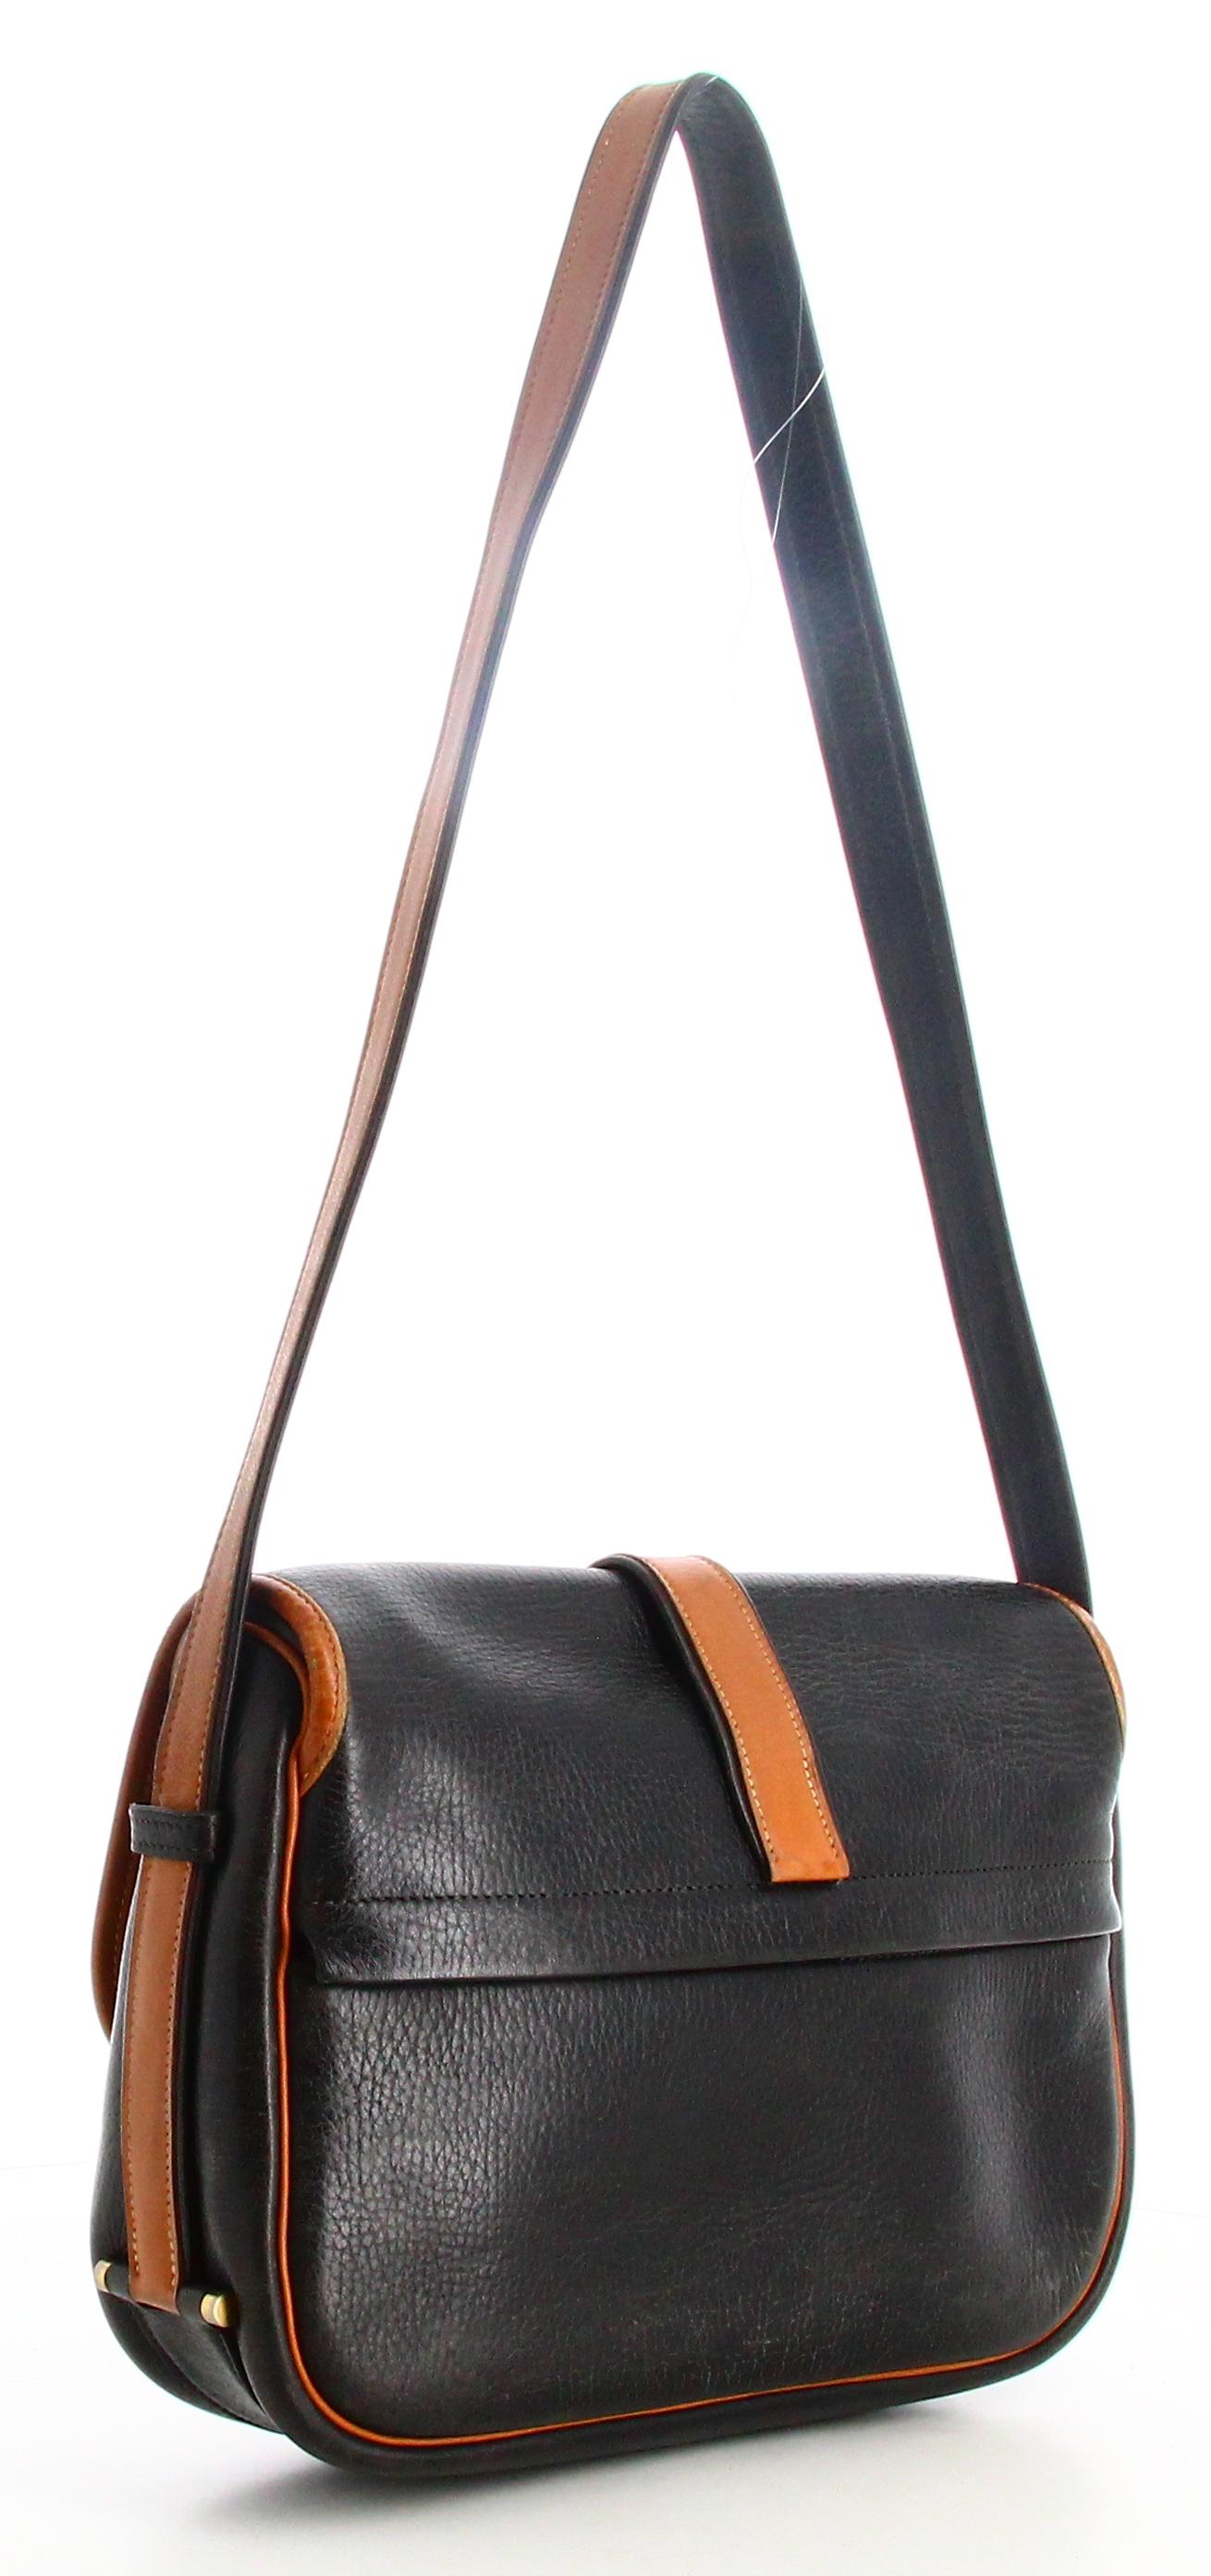 1983 Hermes Black and Brown Leather Shoulder Bag  For Sale 1